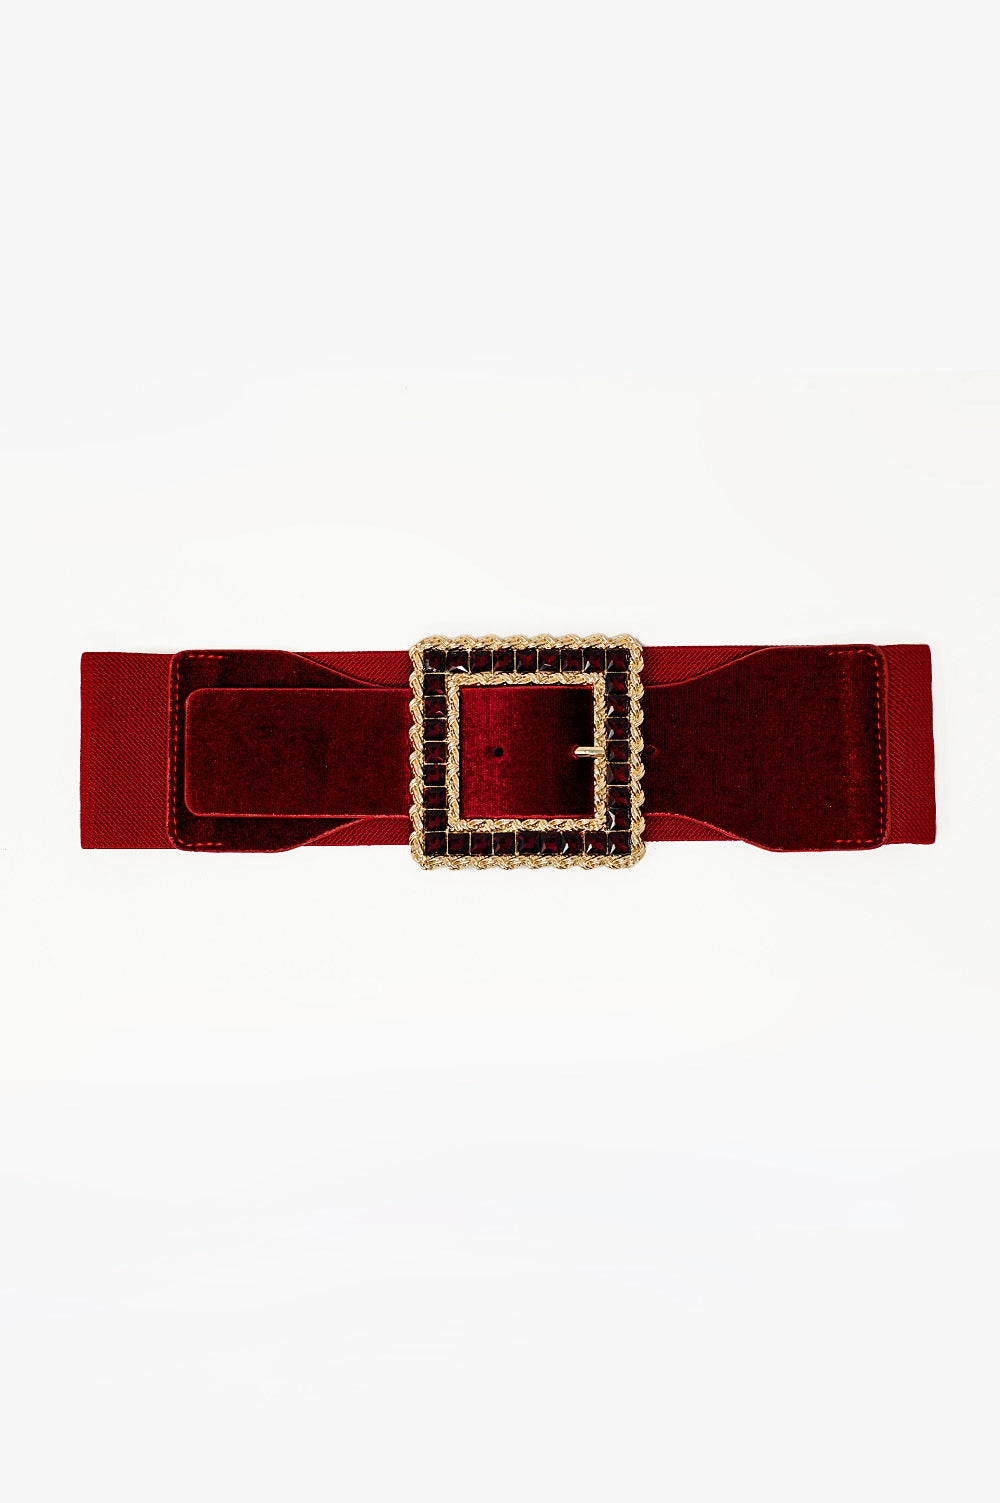 Q2 Cintura rossa quadrata con strass ed elastico regolabile